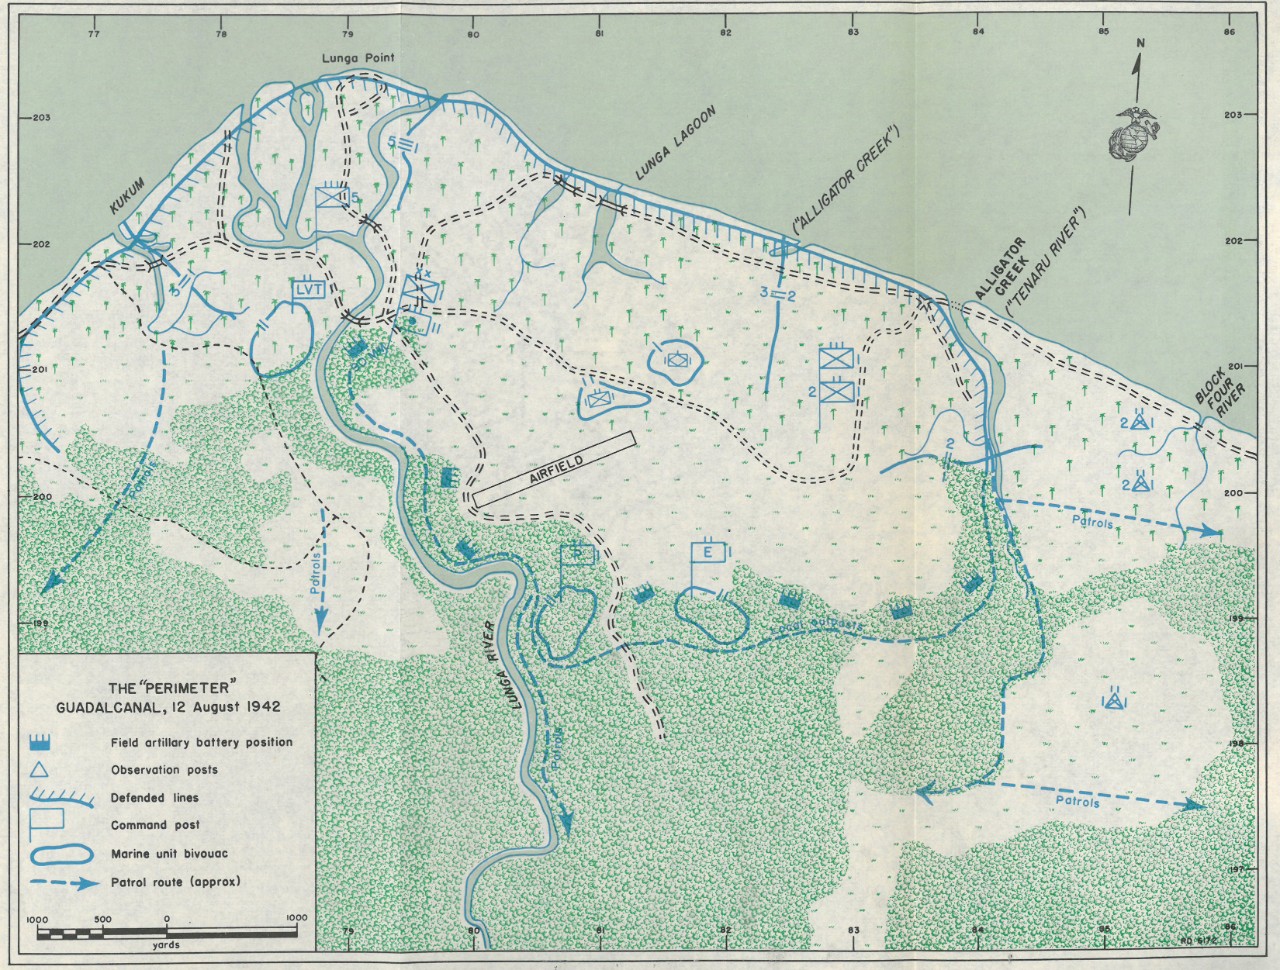 Map 6: The "Perimeter" - Guadalcanal, 12 August 1942 